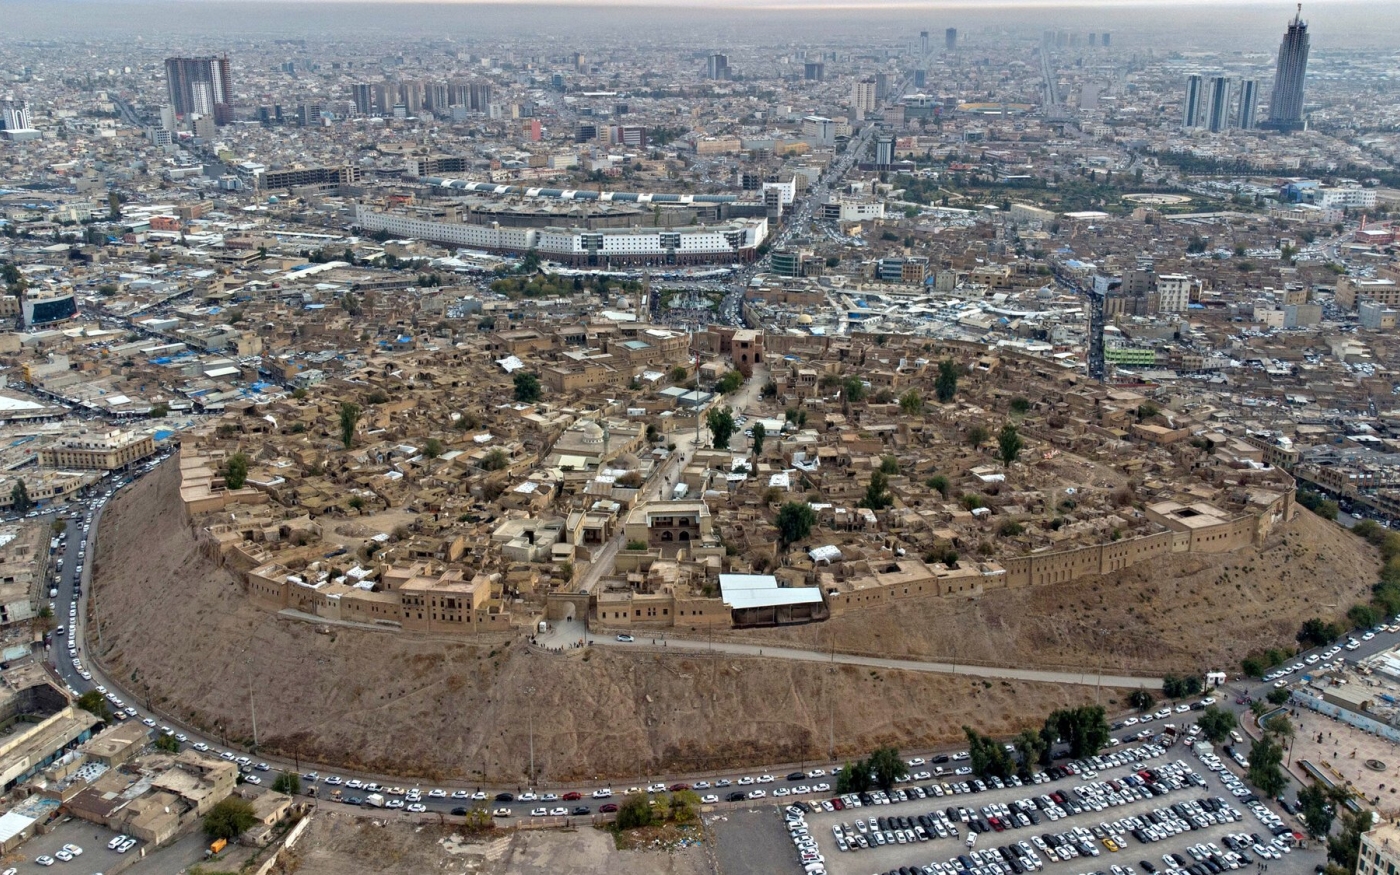 Une vue aérienne montre la citadelle d’Erbil, capitale de la région kurde d’Irak (AFP/Safin Hamed)